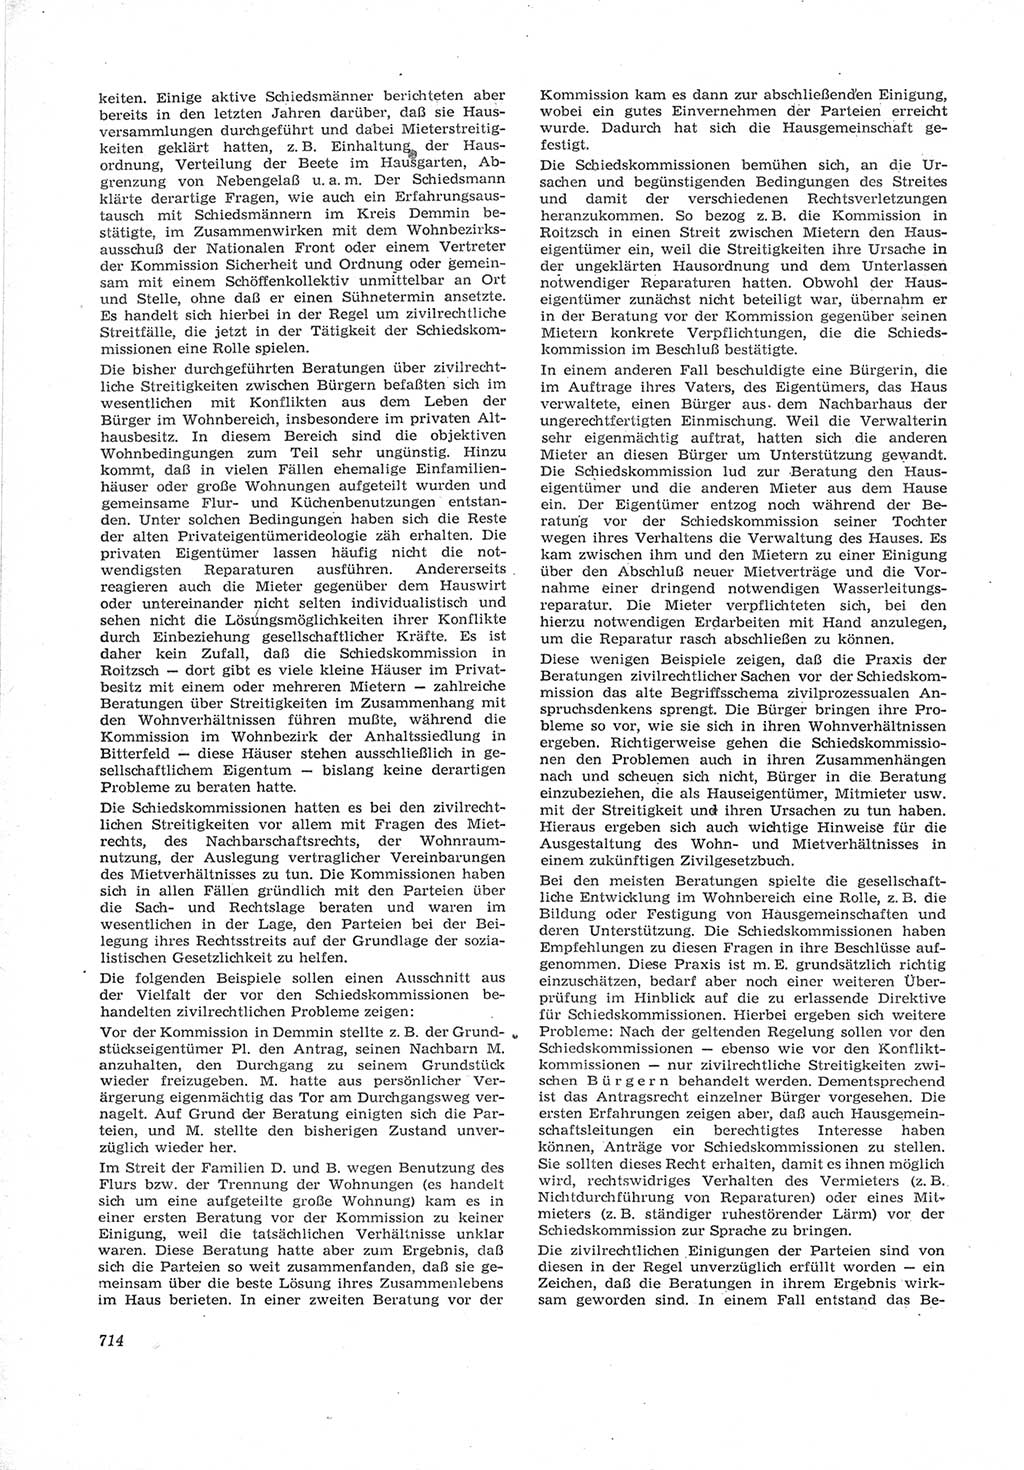 Neue Justiz (NJ), Zeitschrift für Recht und Rechtswissenschaft [Deutsche Demokratische Republik (DDR)], 17. Jahrgang 1963, Seite 714 (NJ DDR 1963, S. 714)